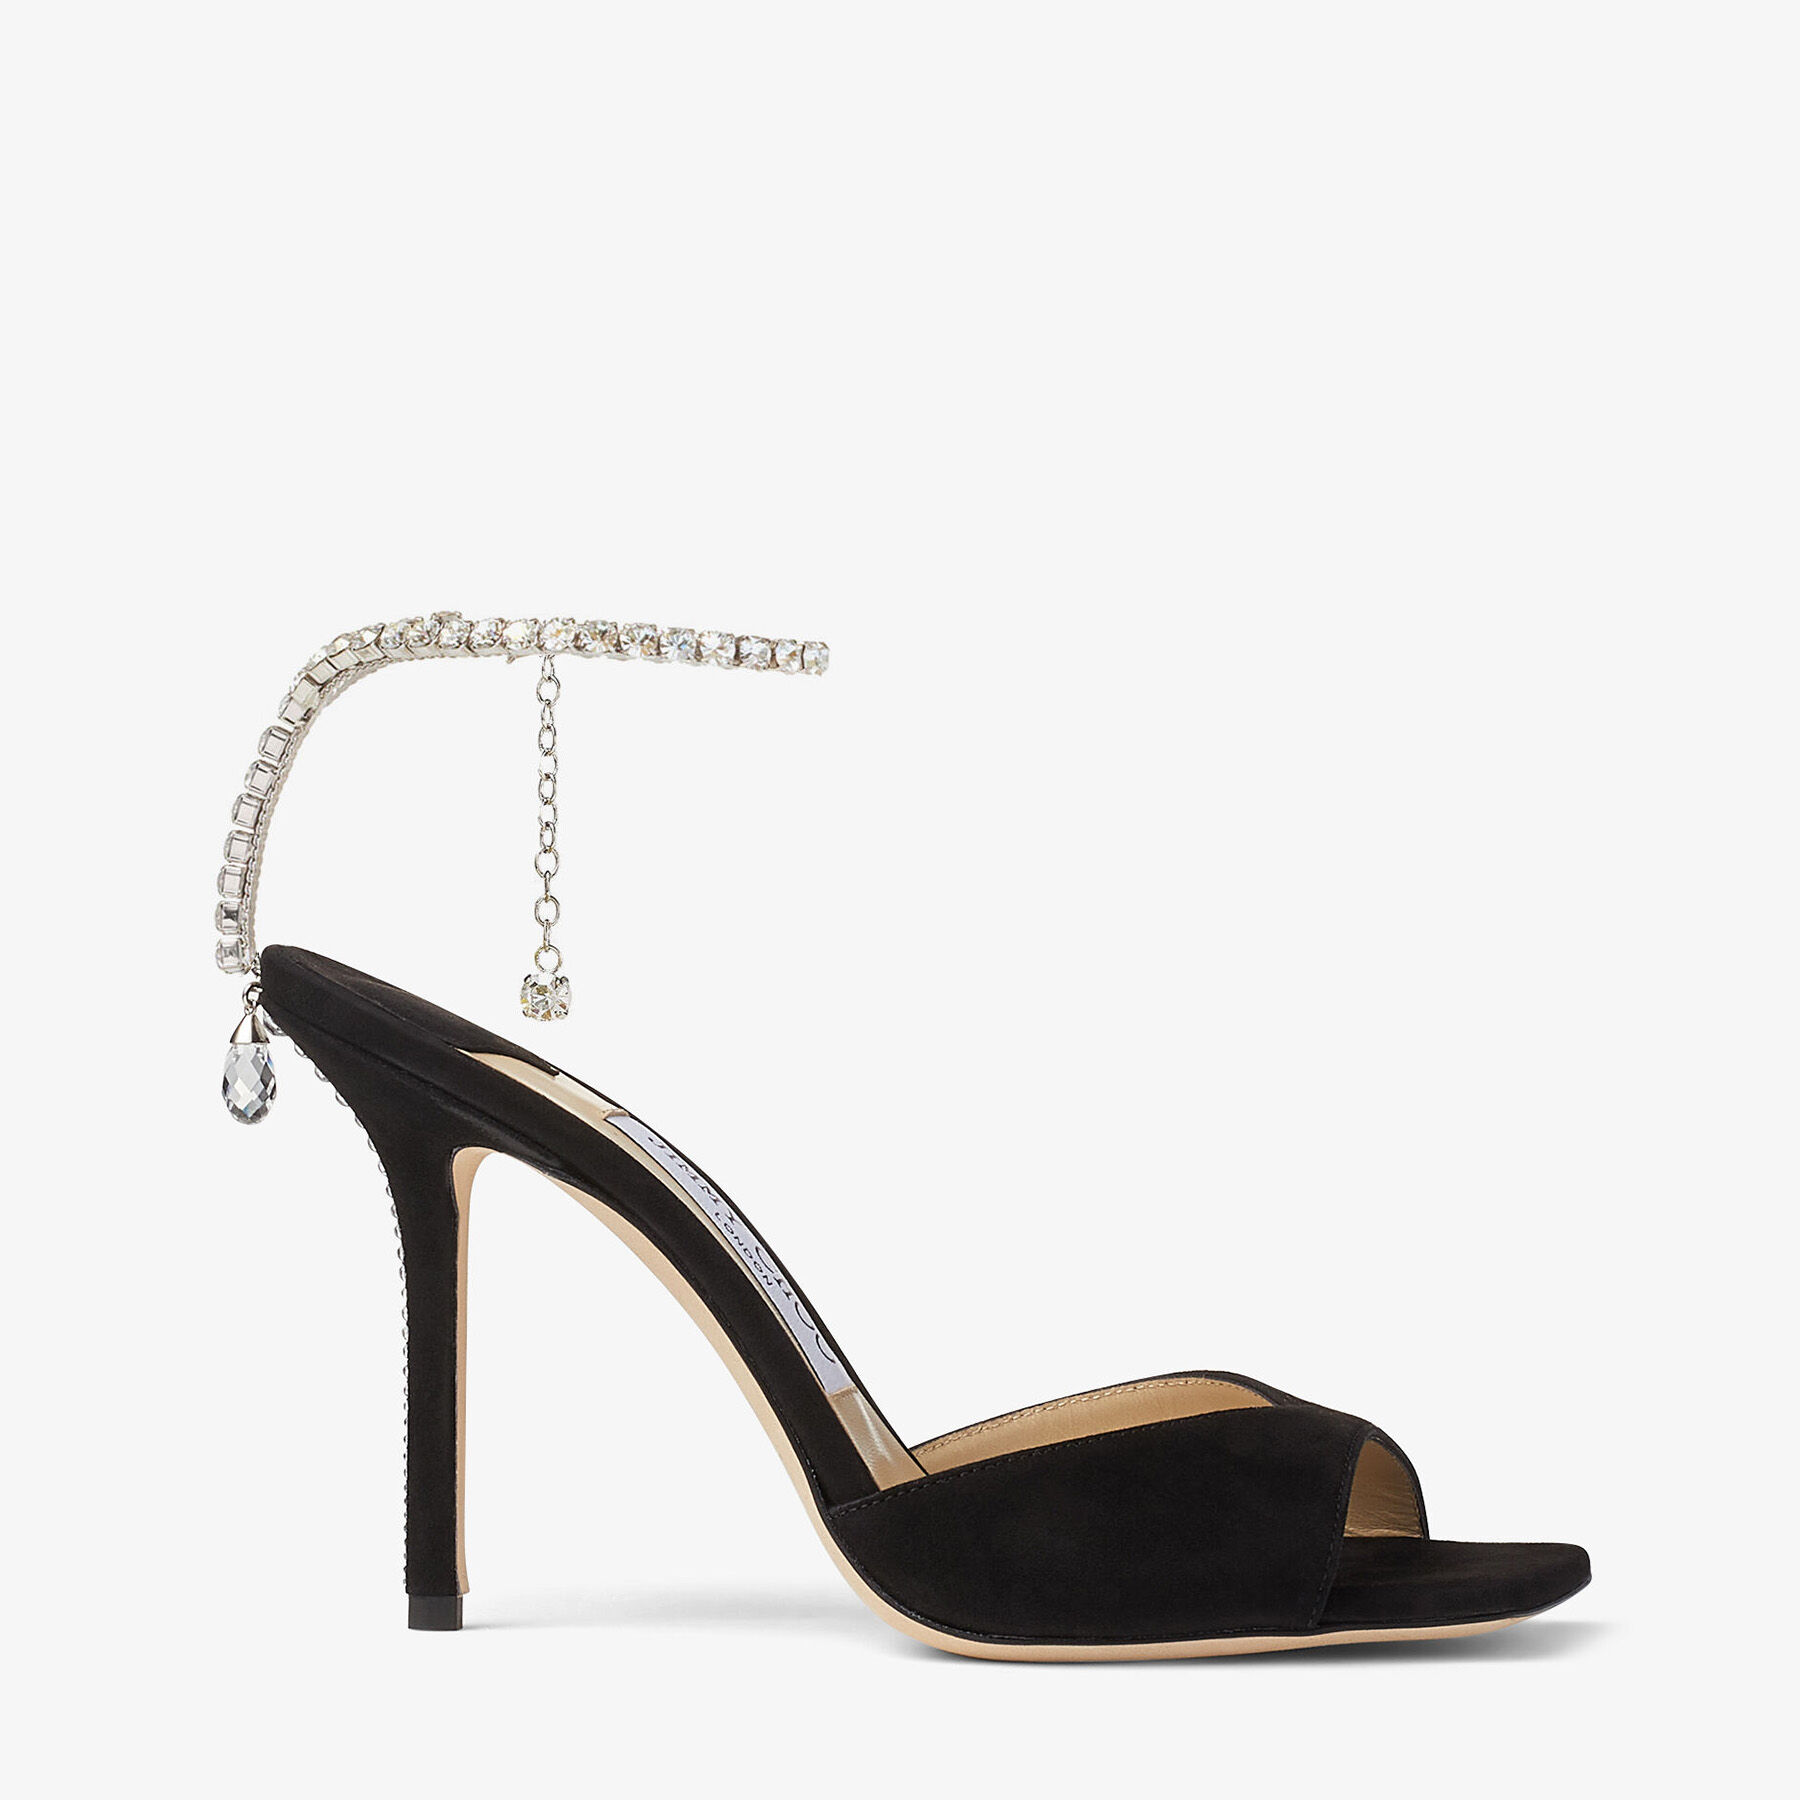 SAEDA SANDAL 100 | Black Suede Sandals with Crystal Embellishment